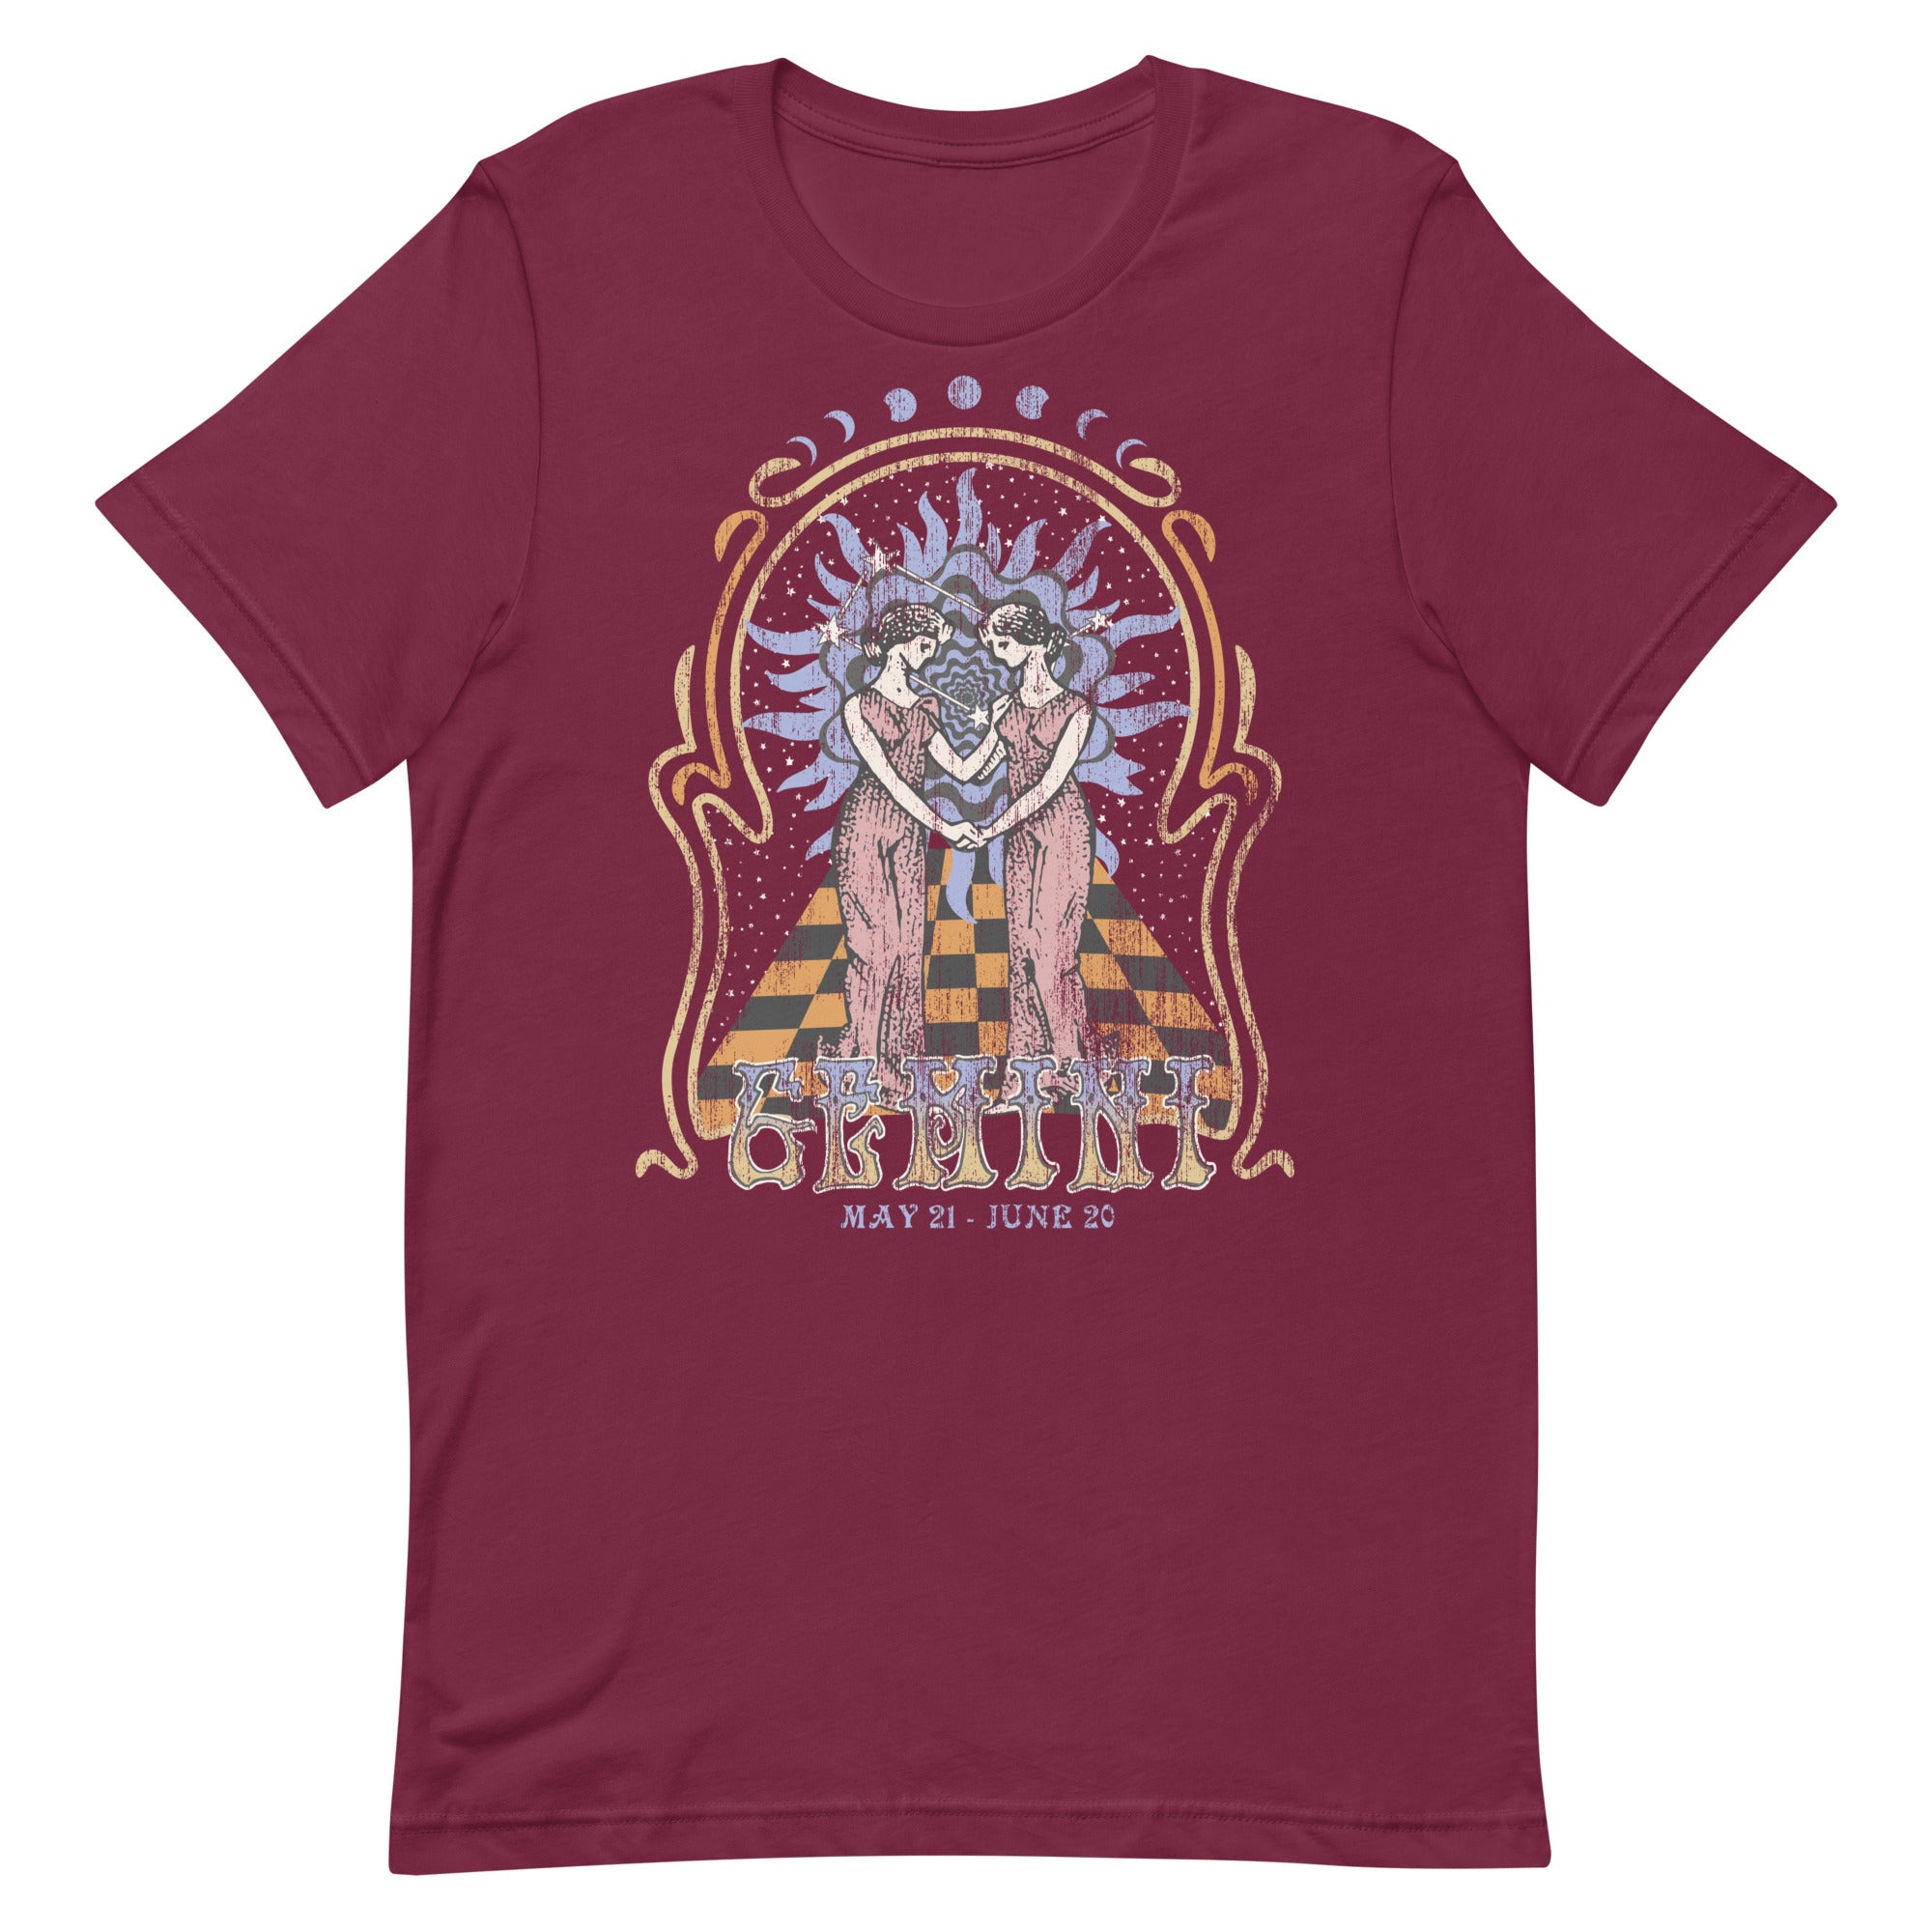 Gemini Band T-Shirt Inspired Graphic Tee